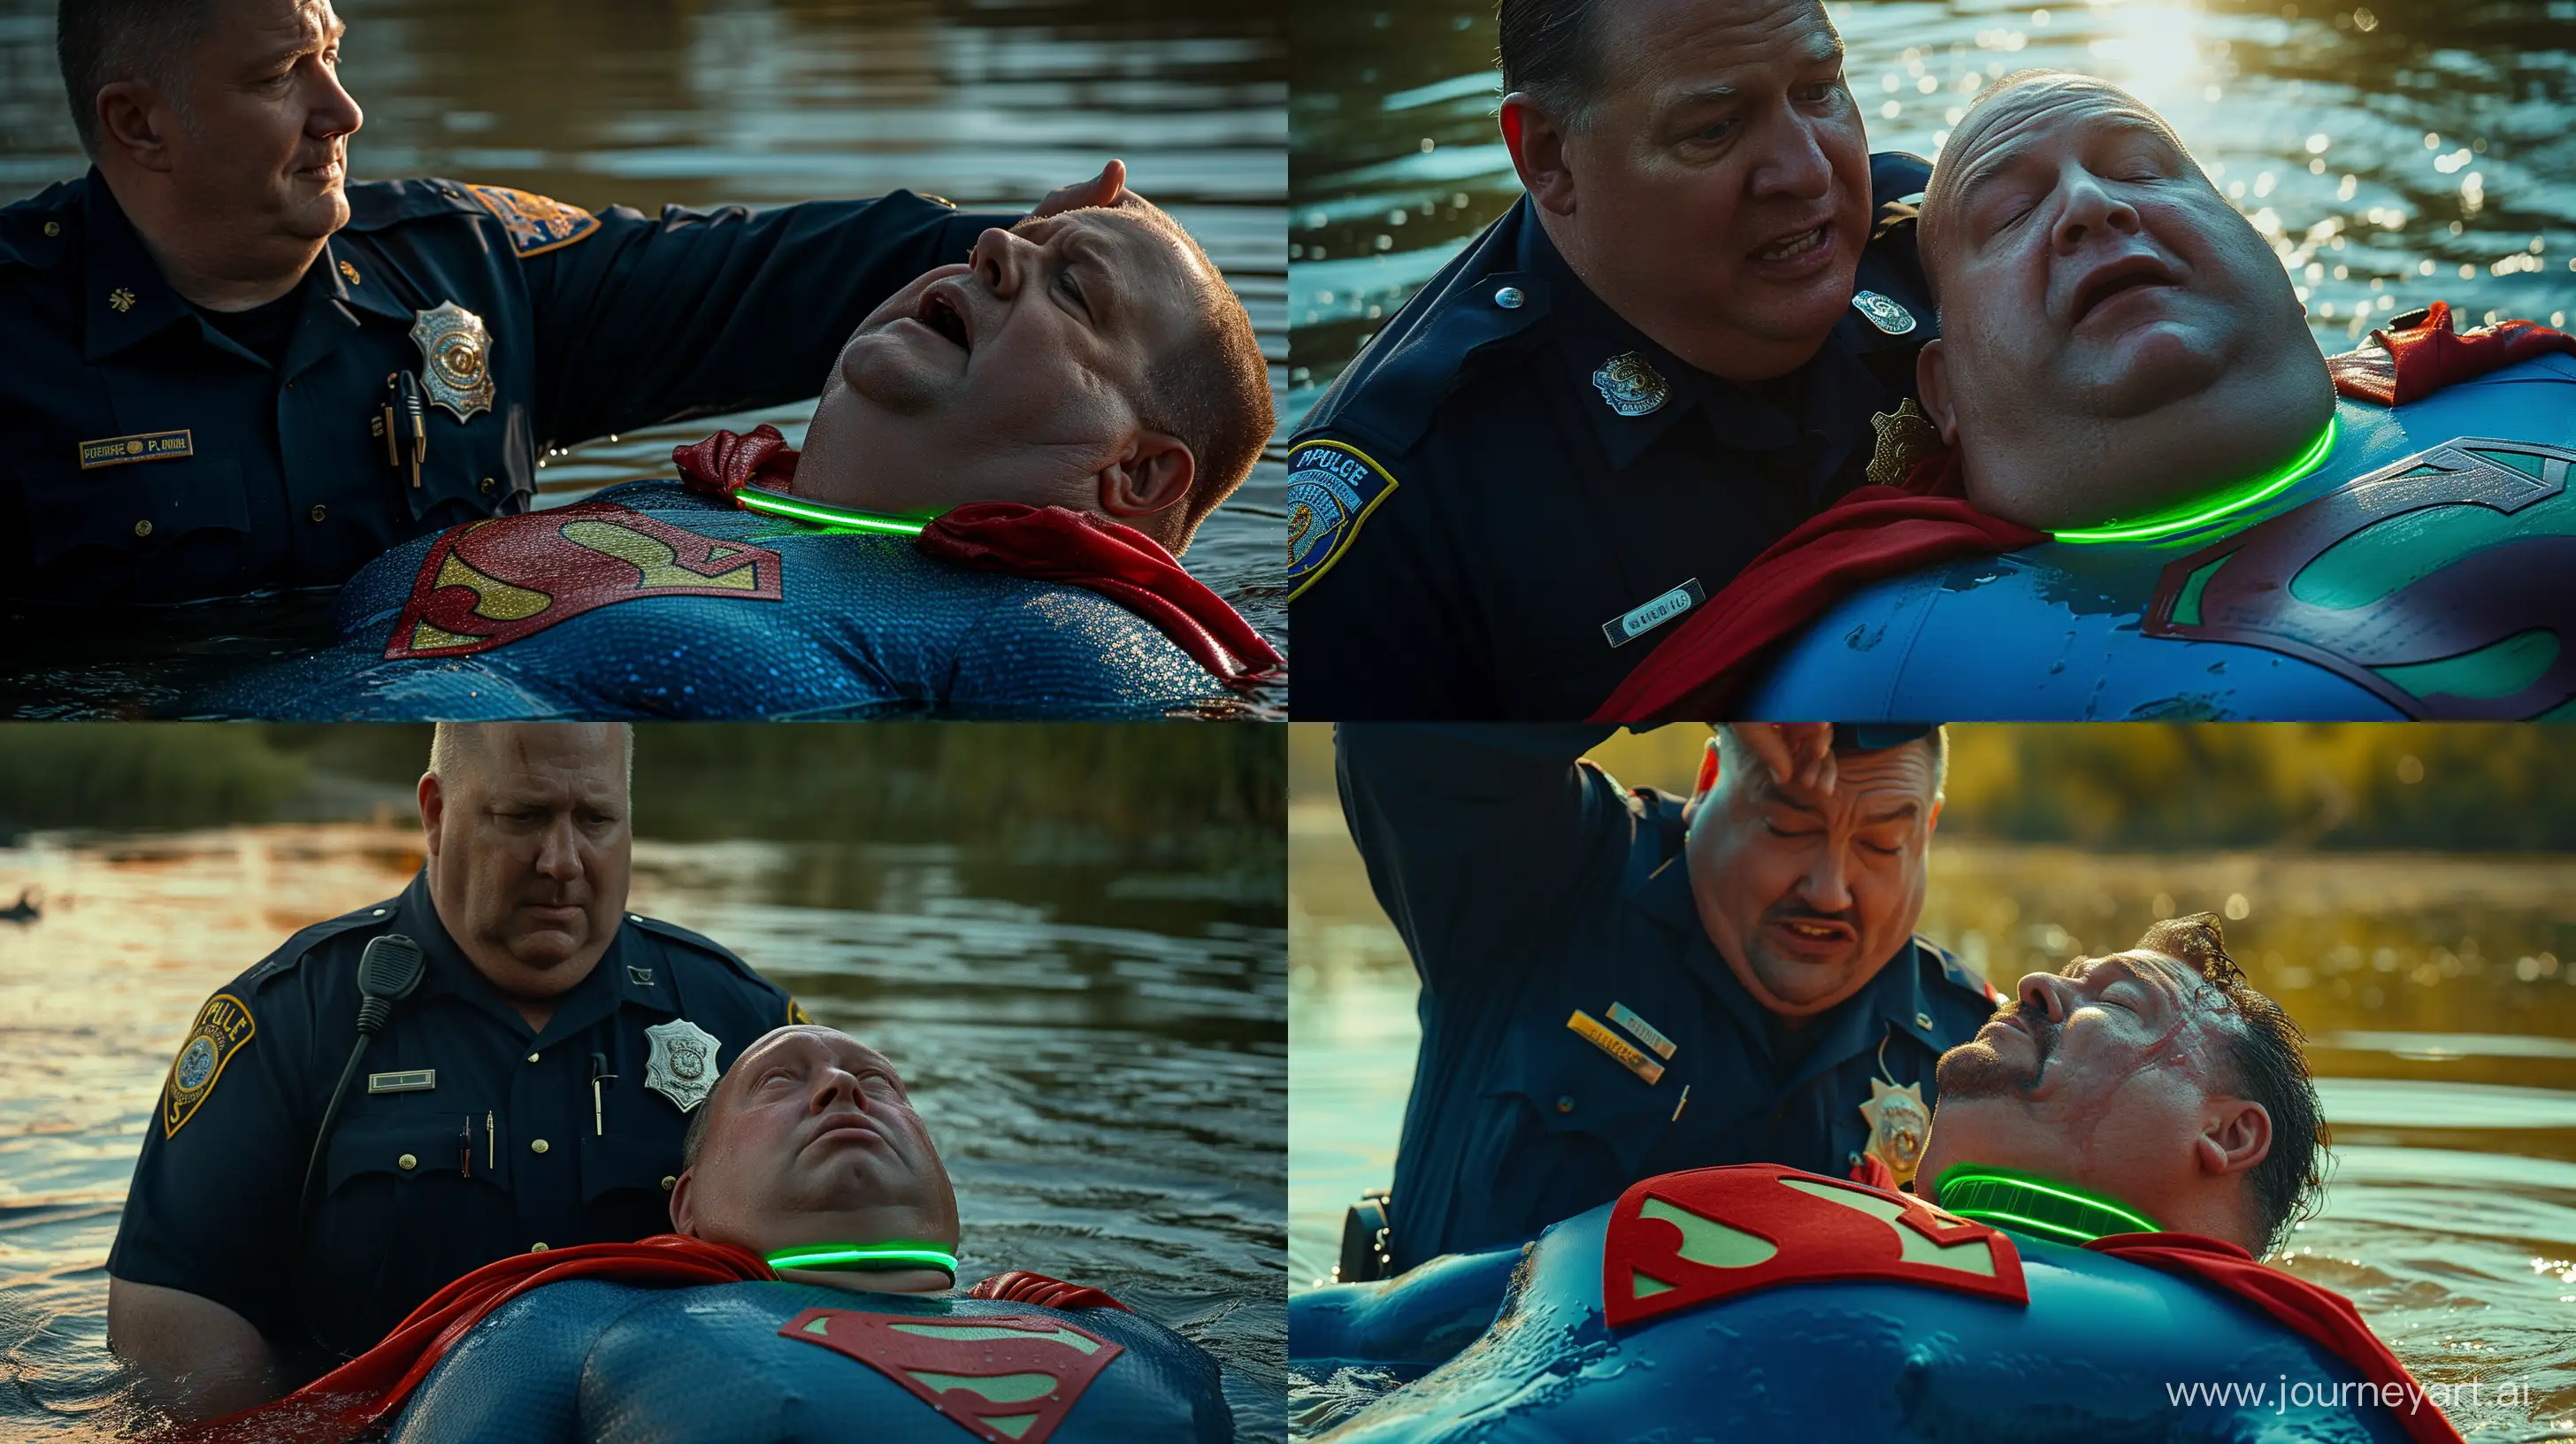 Elderly-Policeman-and-Superhero-Showdown-in-Glowing-Waters